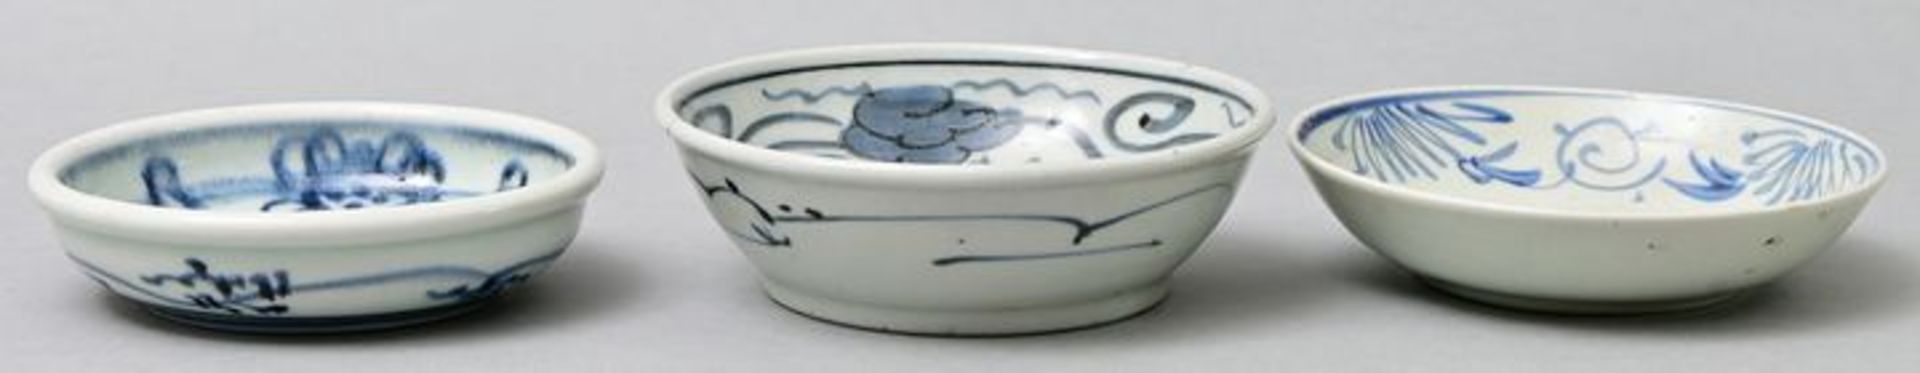 Schälchen Porzellan/ Imari bowls - Image 3 of 3